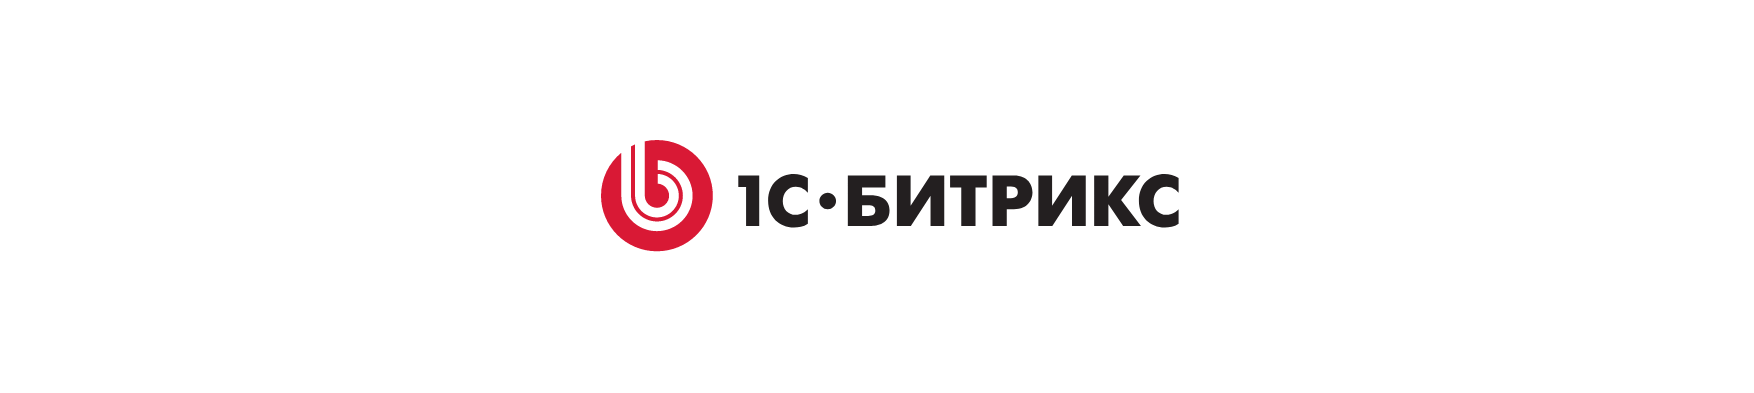 битрикс логотип